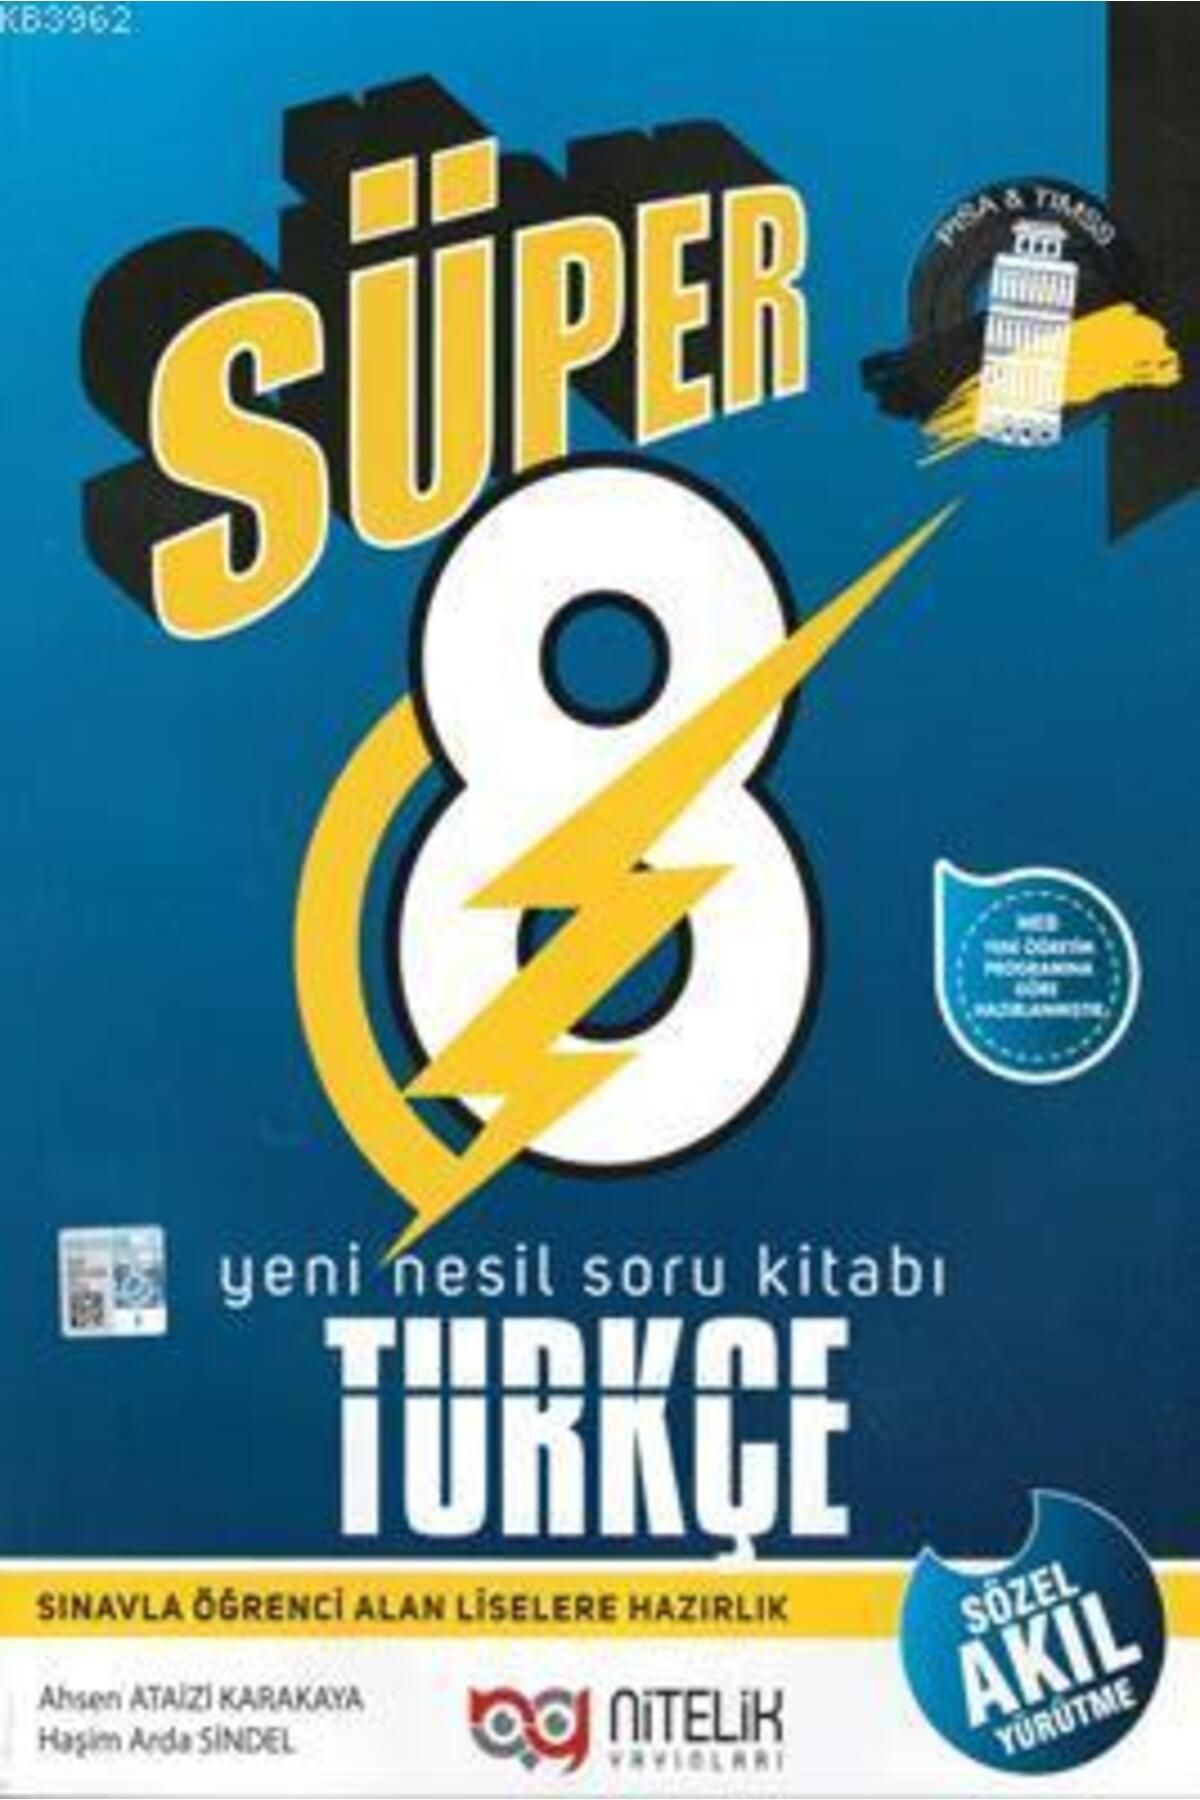 Nitelik Yayınları Süper 8. Sınıf Türkçe Yeni Nesil Soru Kitabı